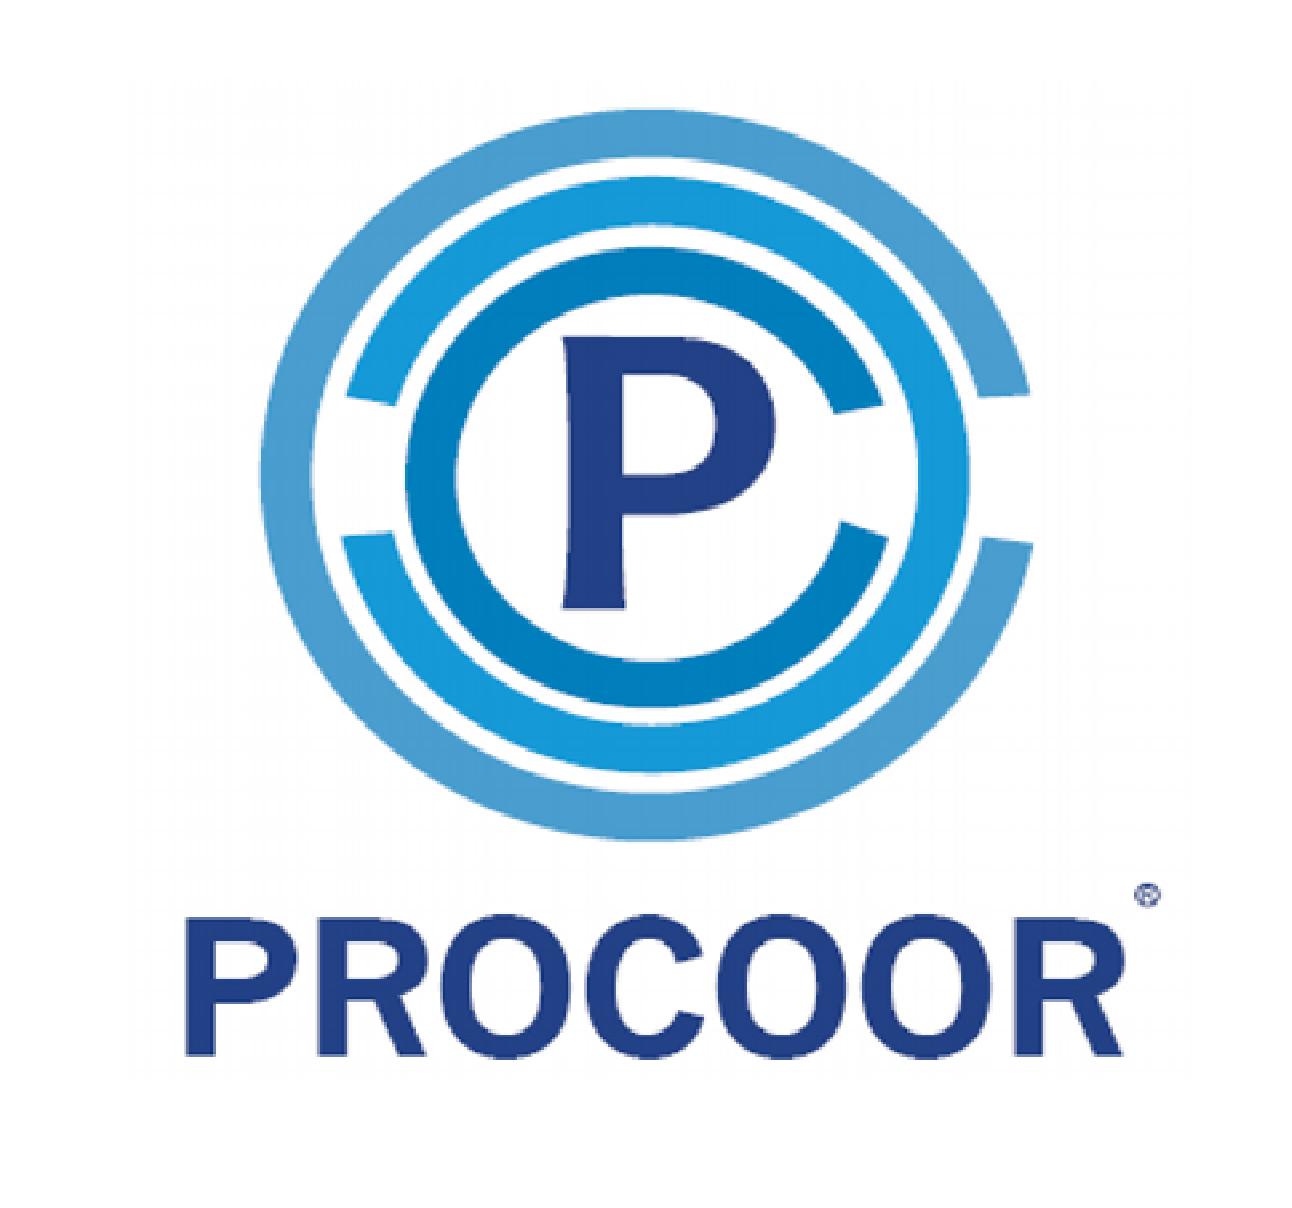 Procoor Management Solutions